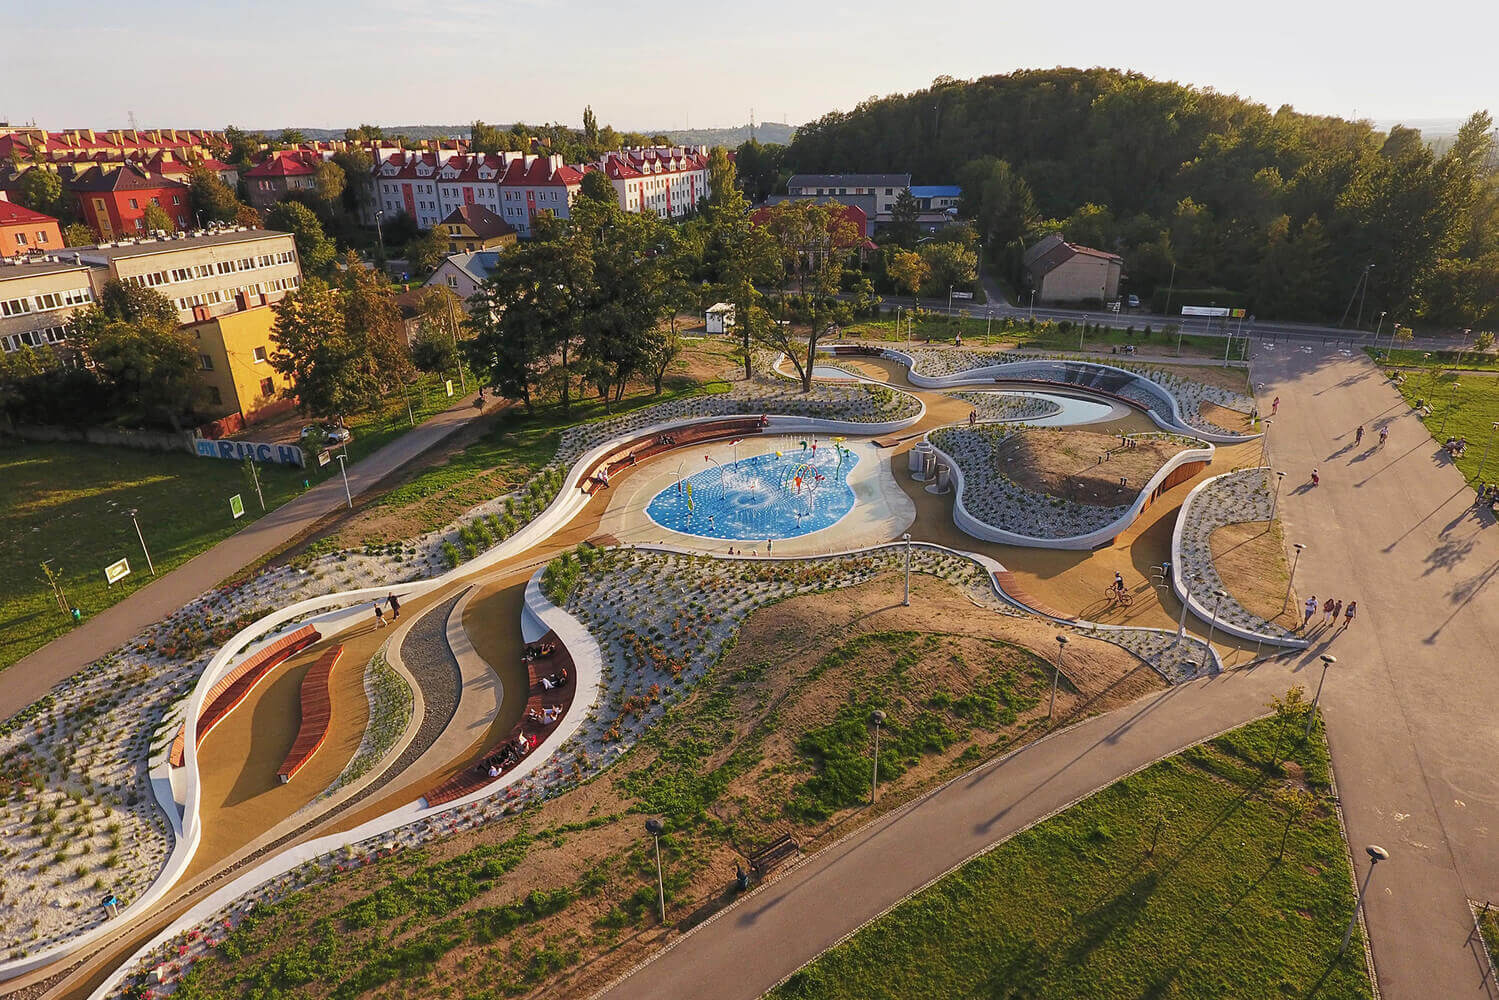 Jaworznickie-Planty-Water-Playground